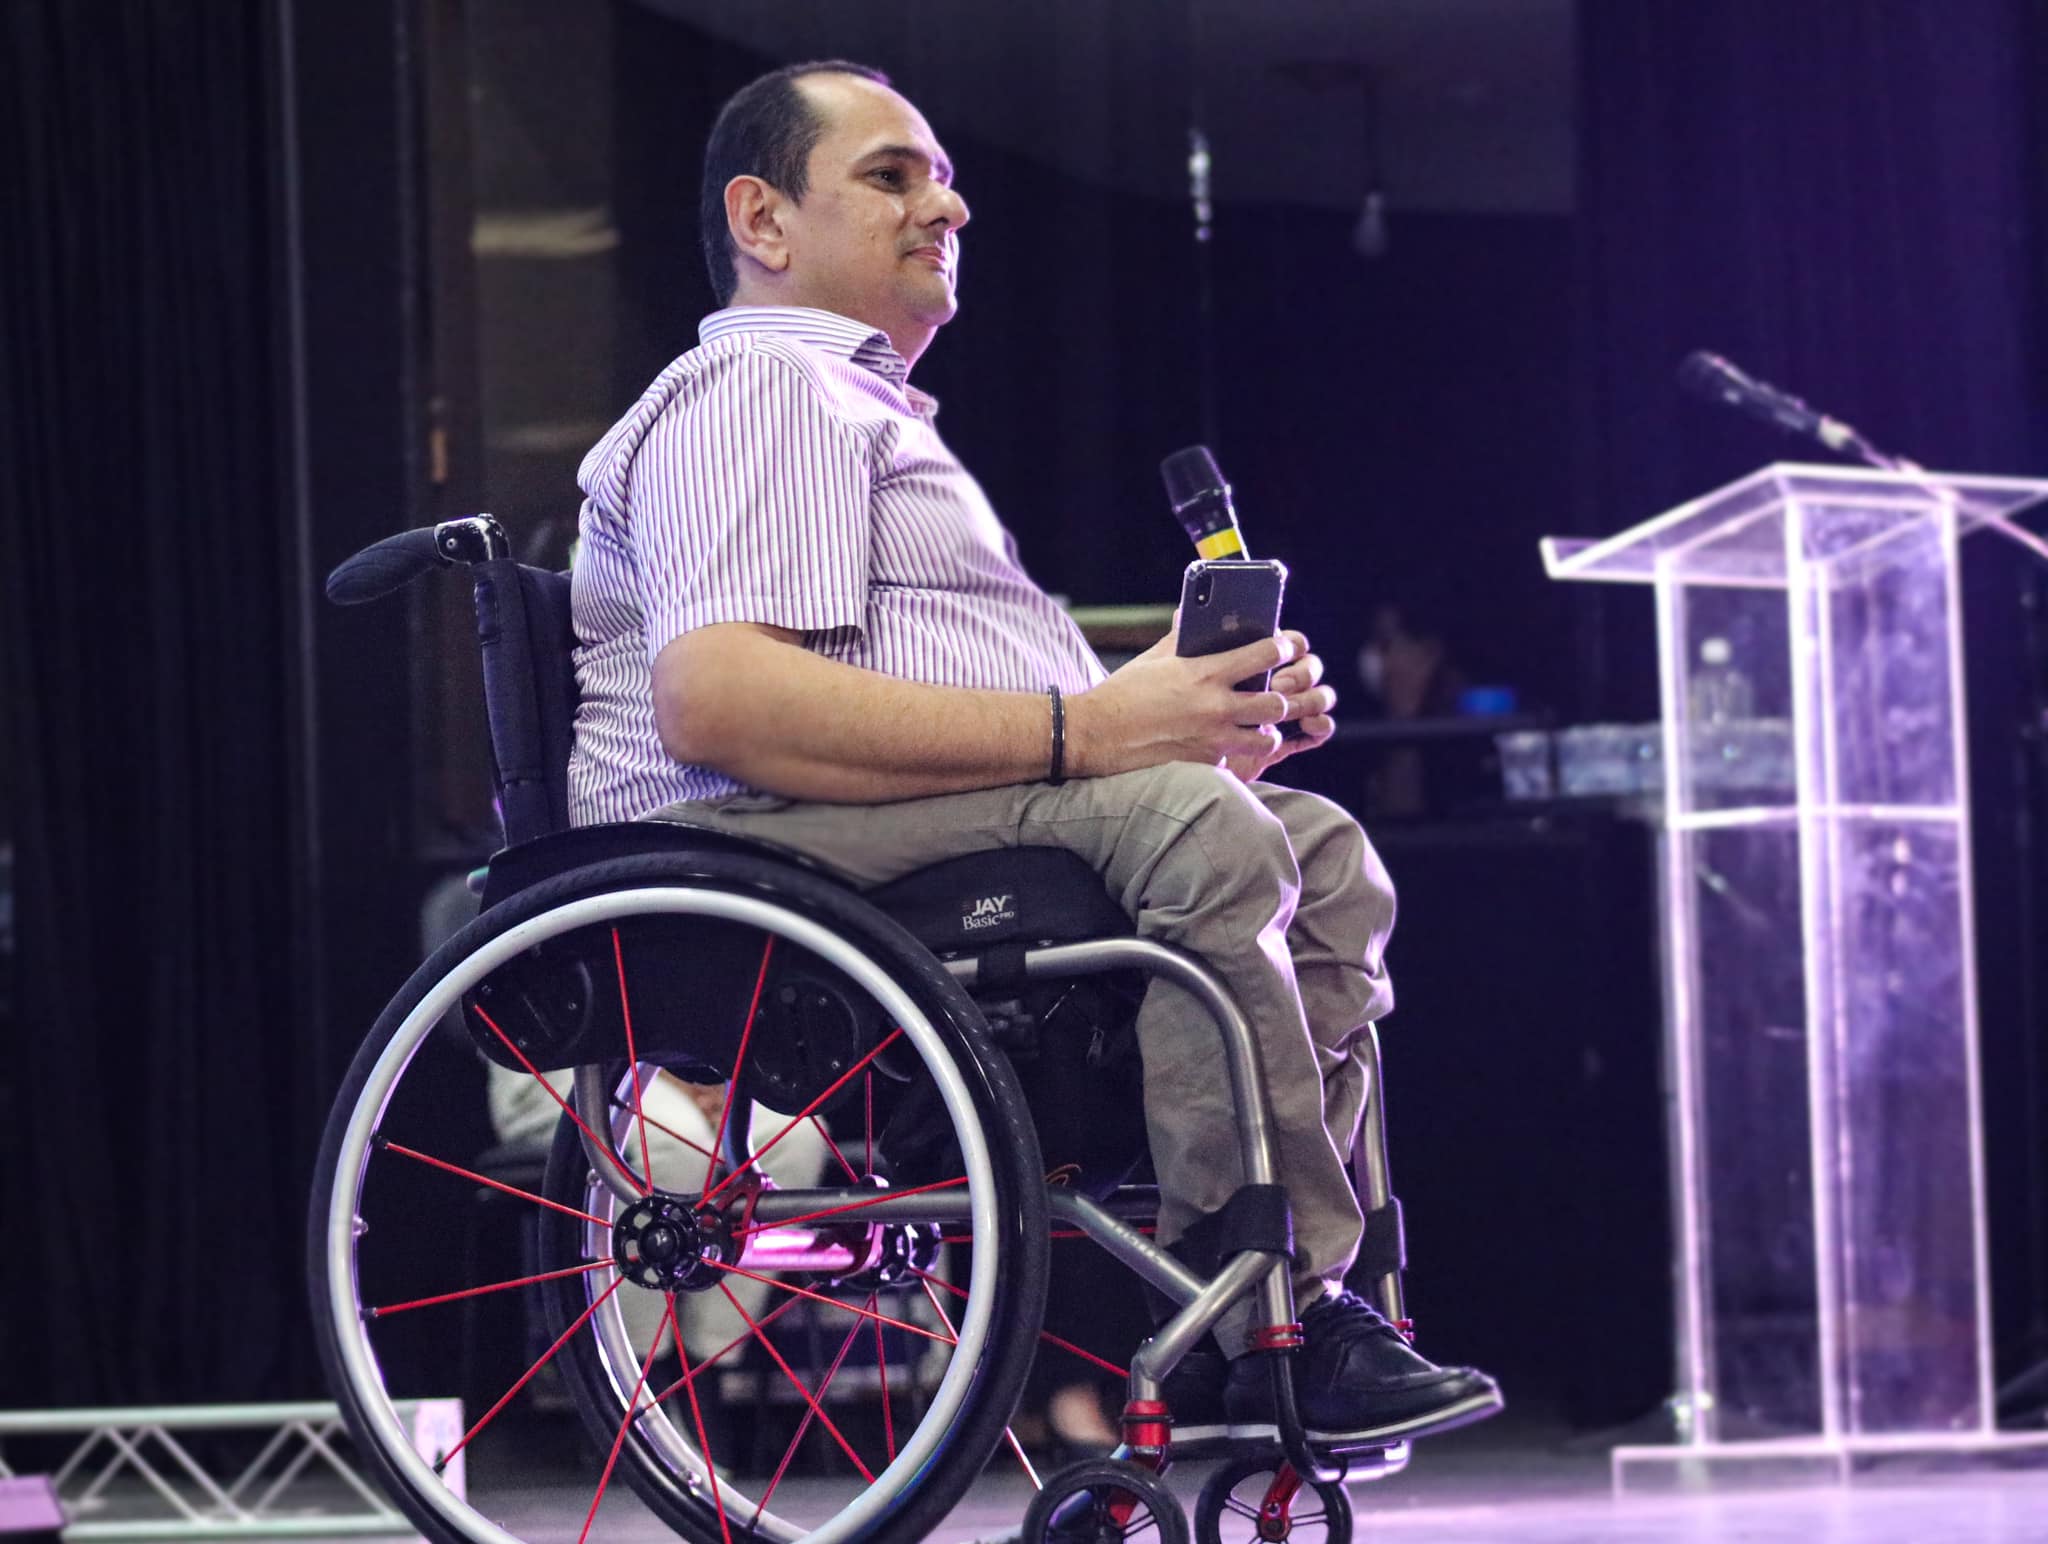 O jornalista Jairo Marques no palco. Ele fala ao microfone e usa uma cadeira de rodas.